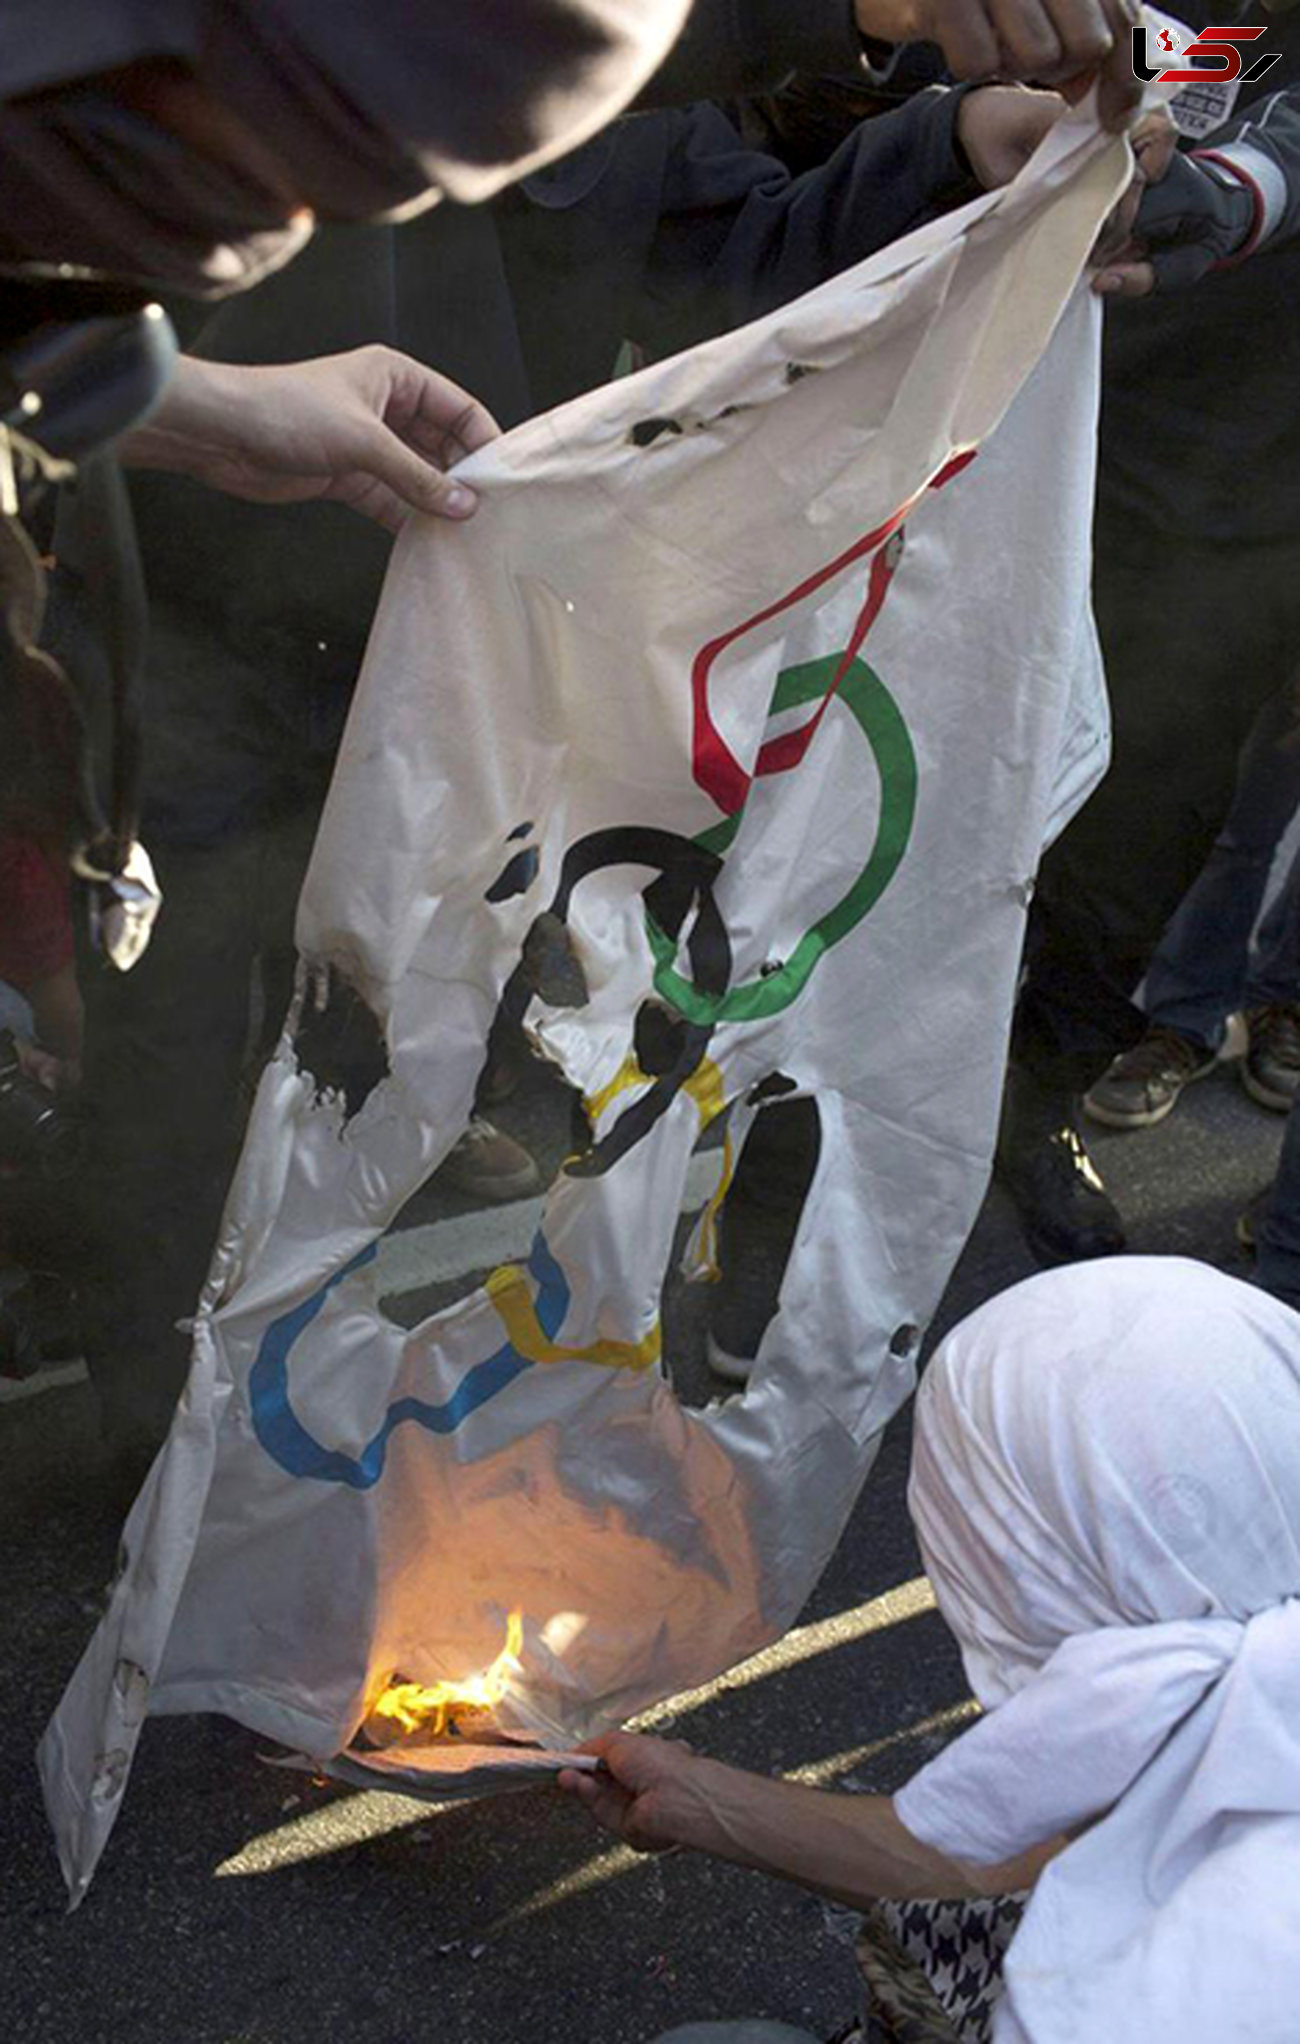 برزیلی ها پرچم المپیک را آتش زدند